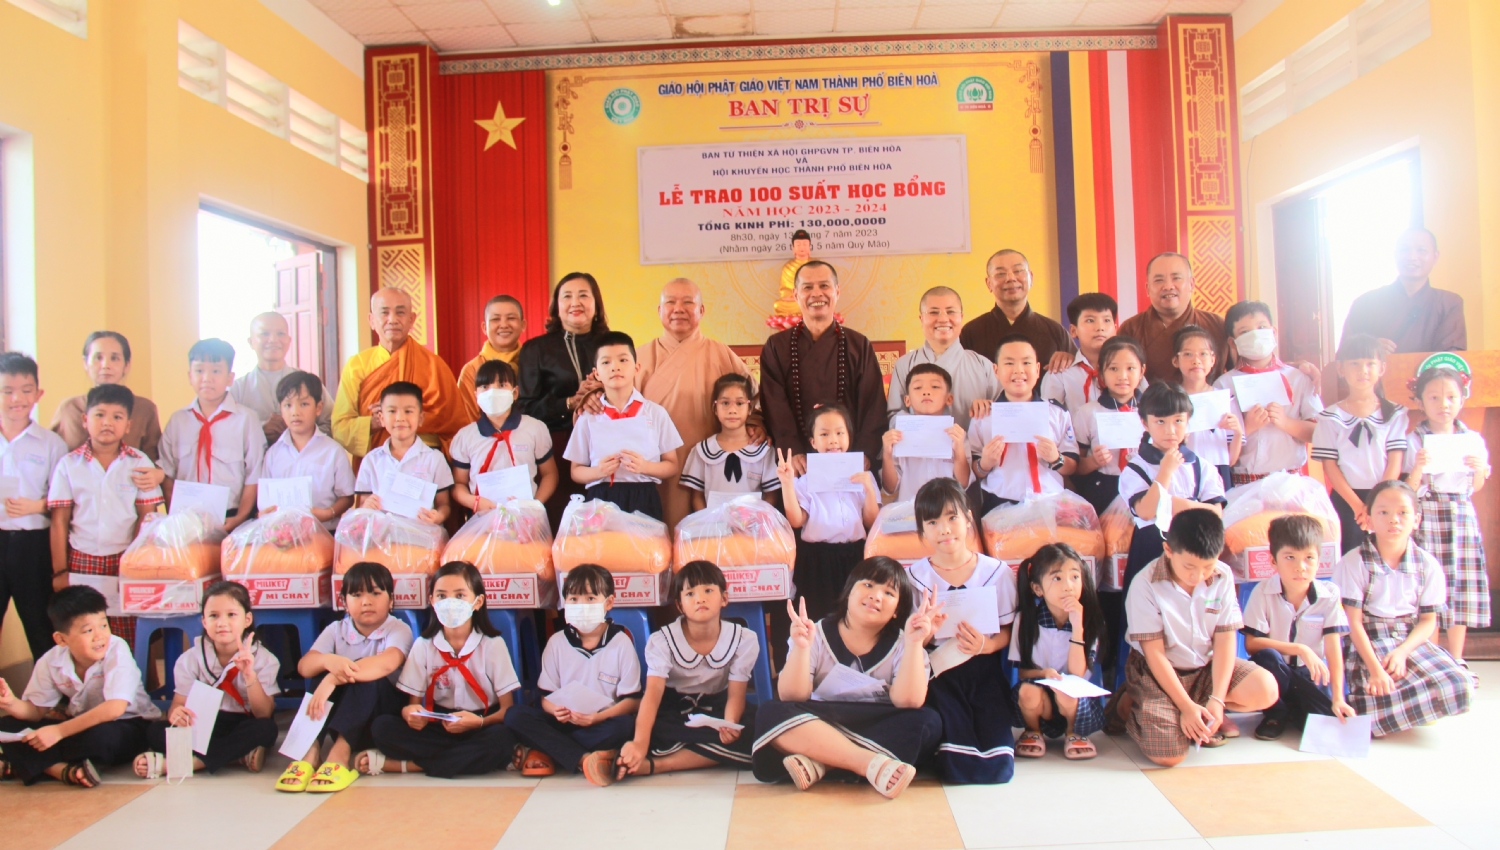 TP Biên Hòa: Ban Từ thiện Xã hội GHPGVN thành phố Biên Hòa phối hợp với Hội Khuyến học cùng cấp trao 100 suất học bổng cho học sinh nghèo hiếu học